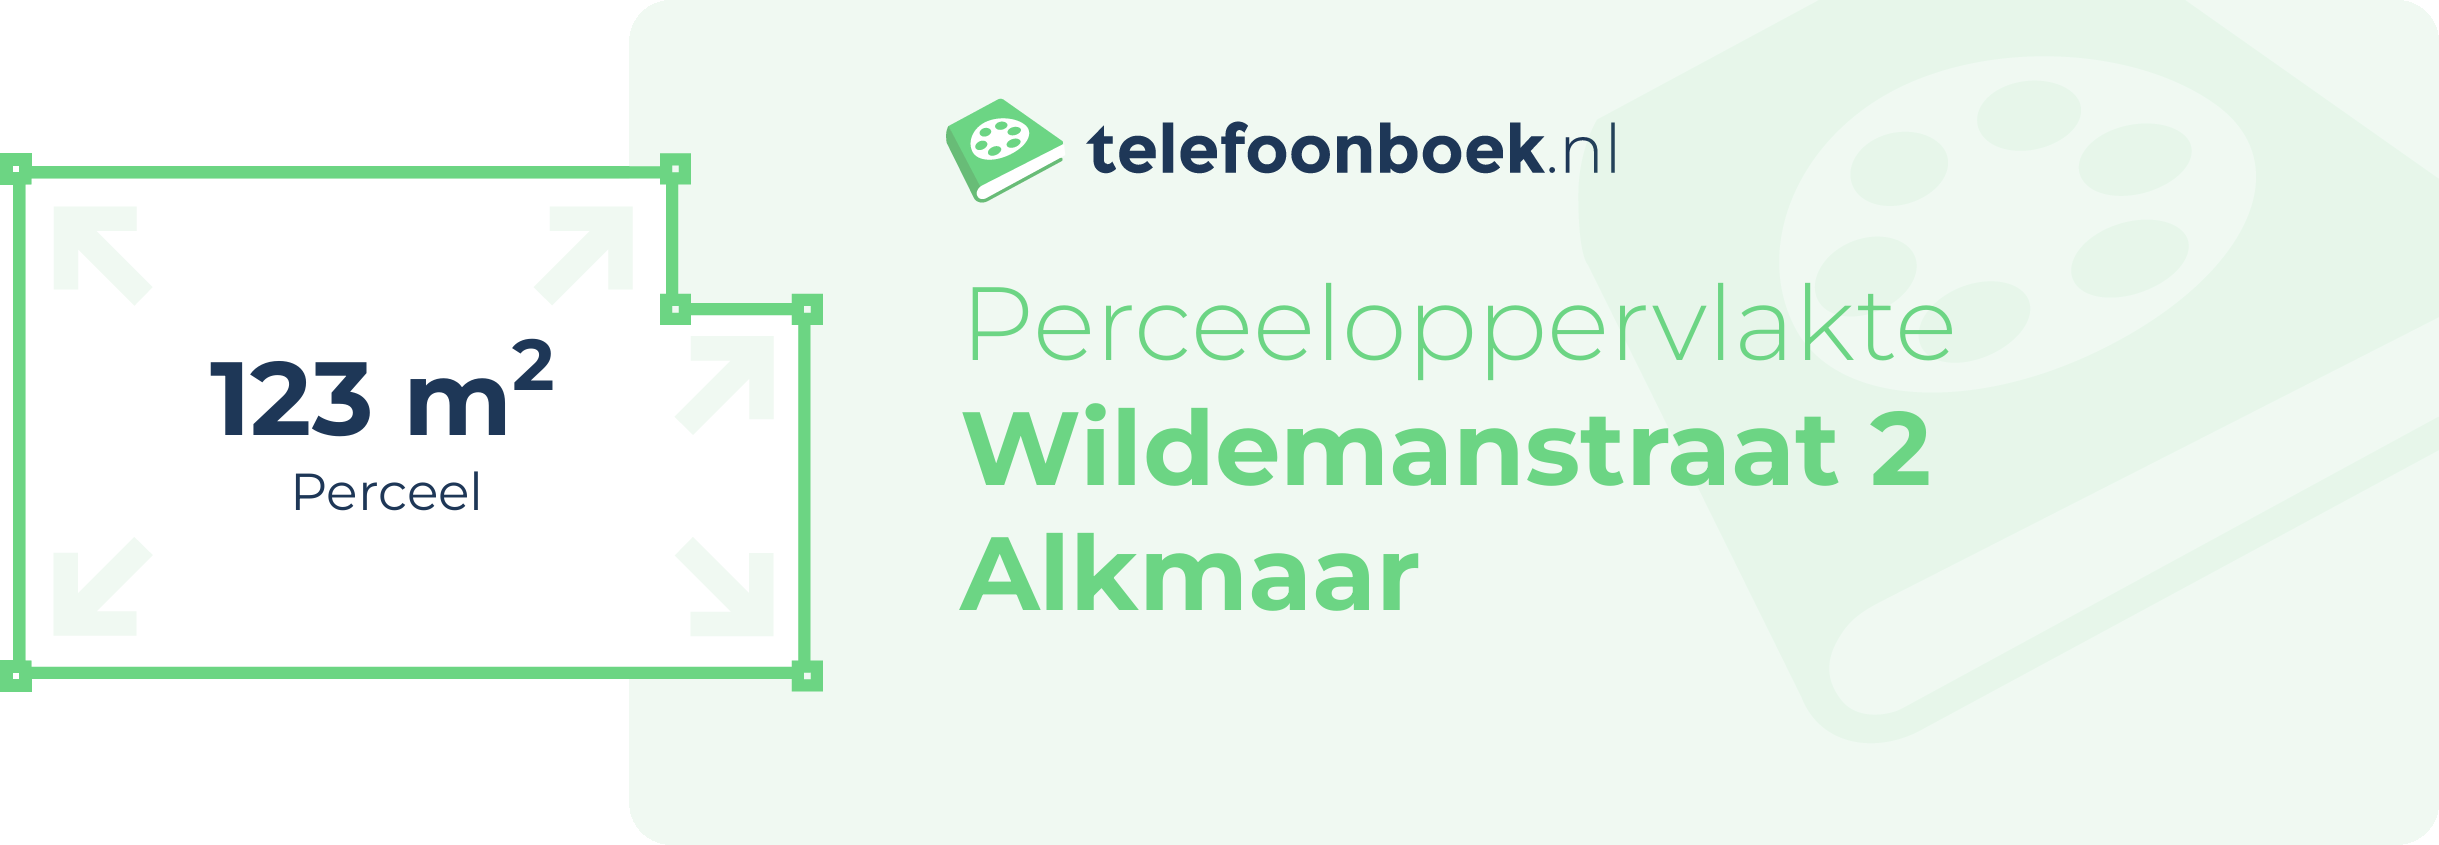 Perceeloppervlakte Wildemanstraat 2 Alkmaar